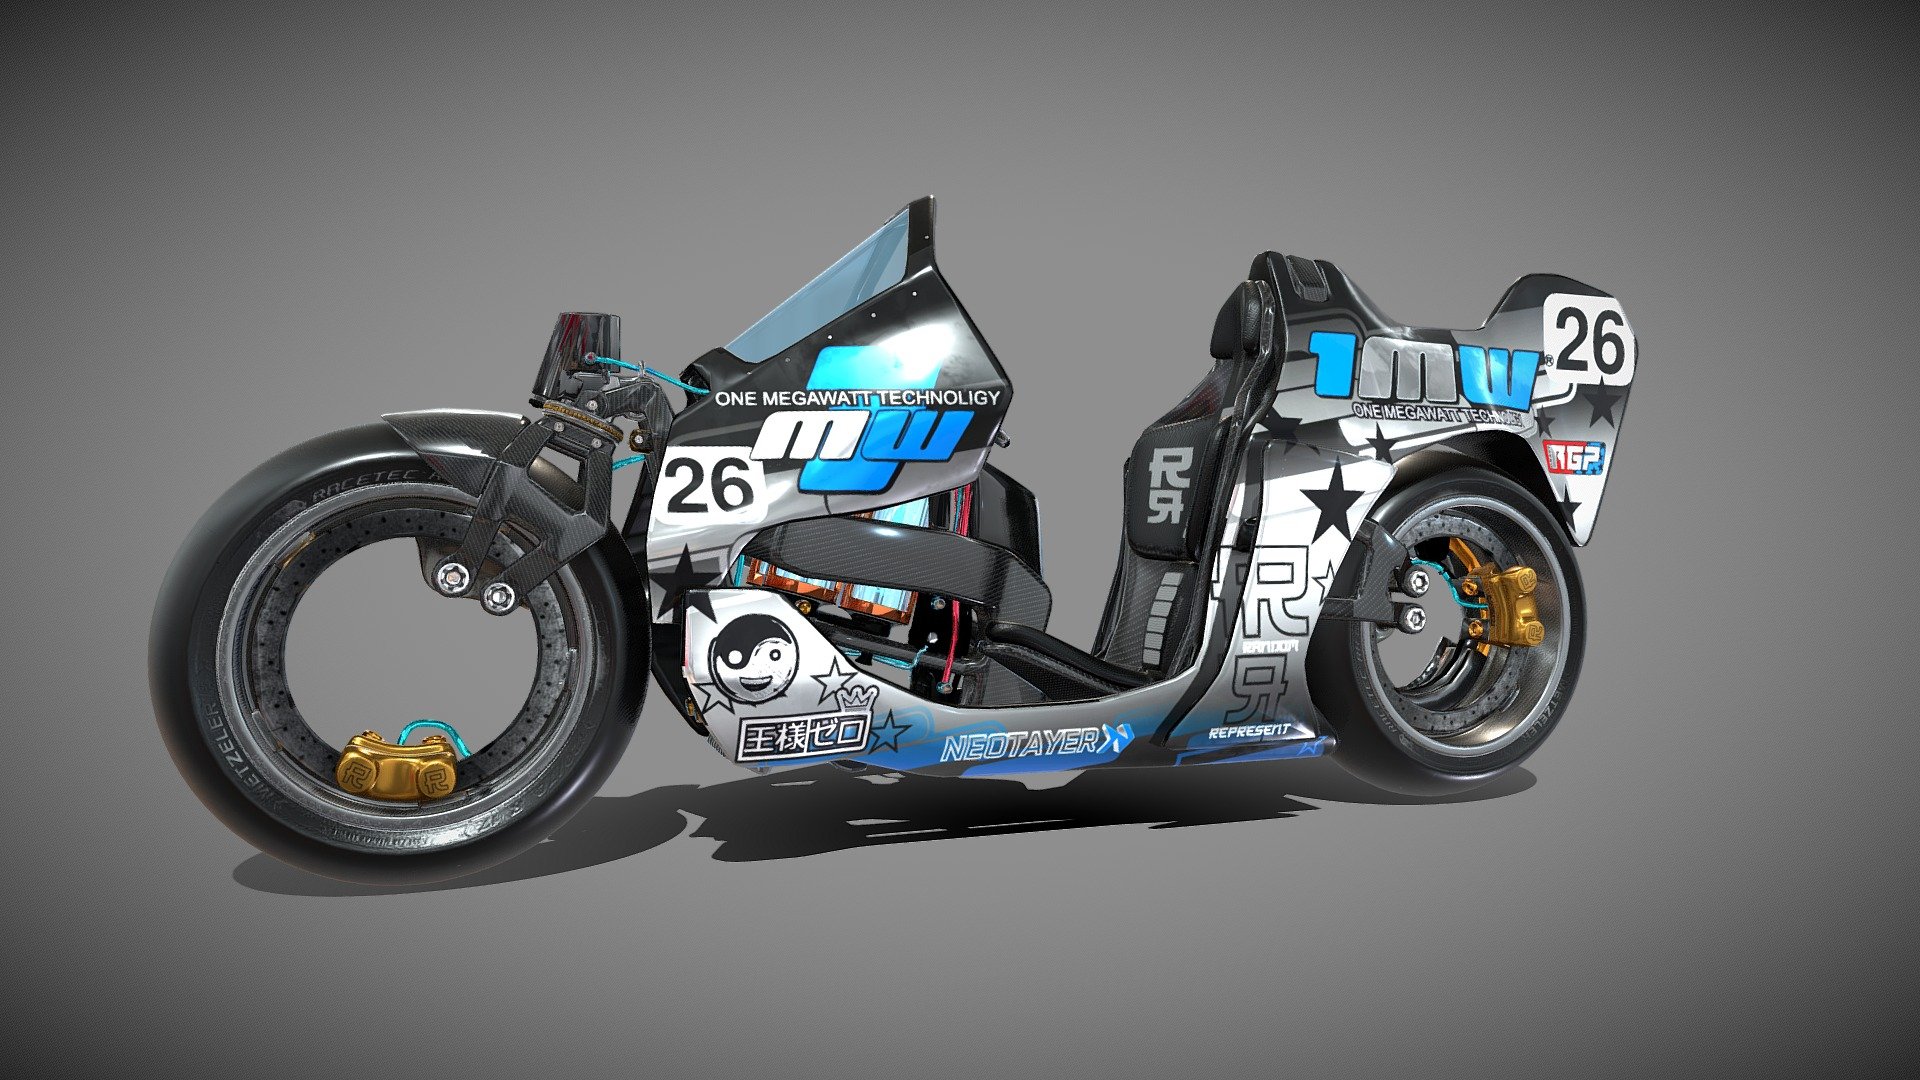 Modelado en Blender - Bike Moto E RandomRepresent - 3D model by RandomRepresent 3d model